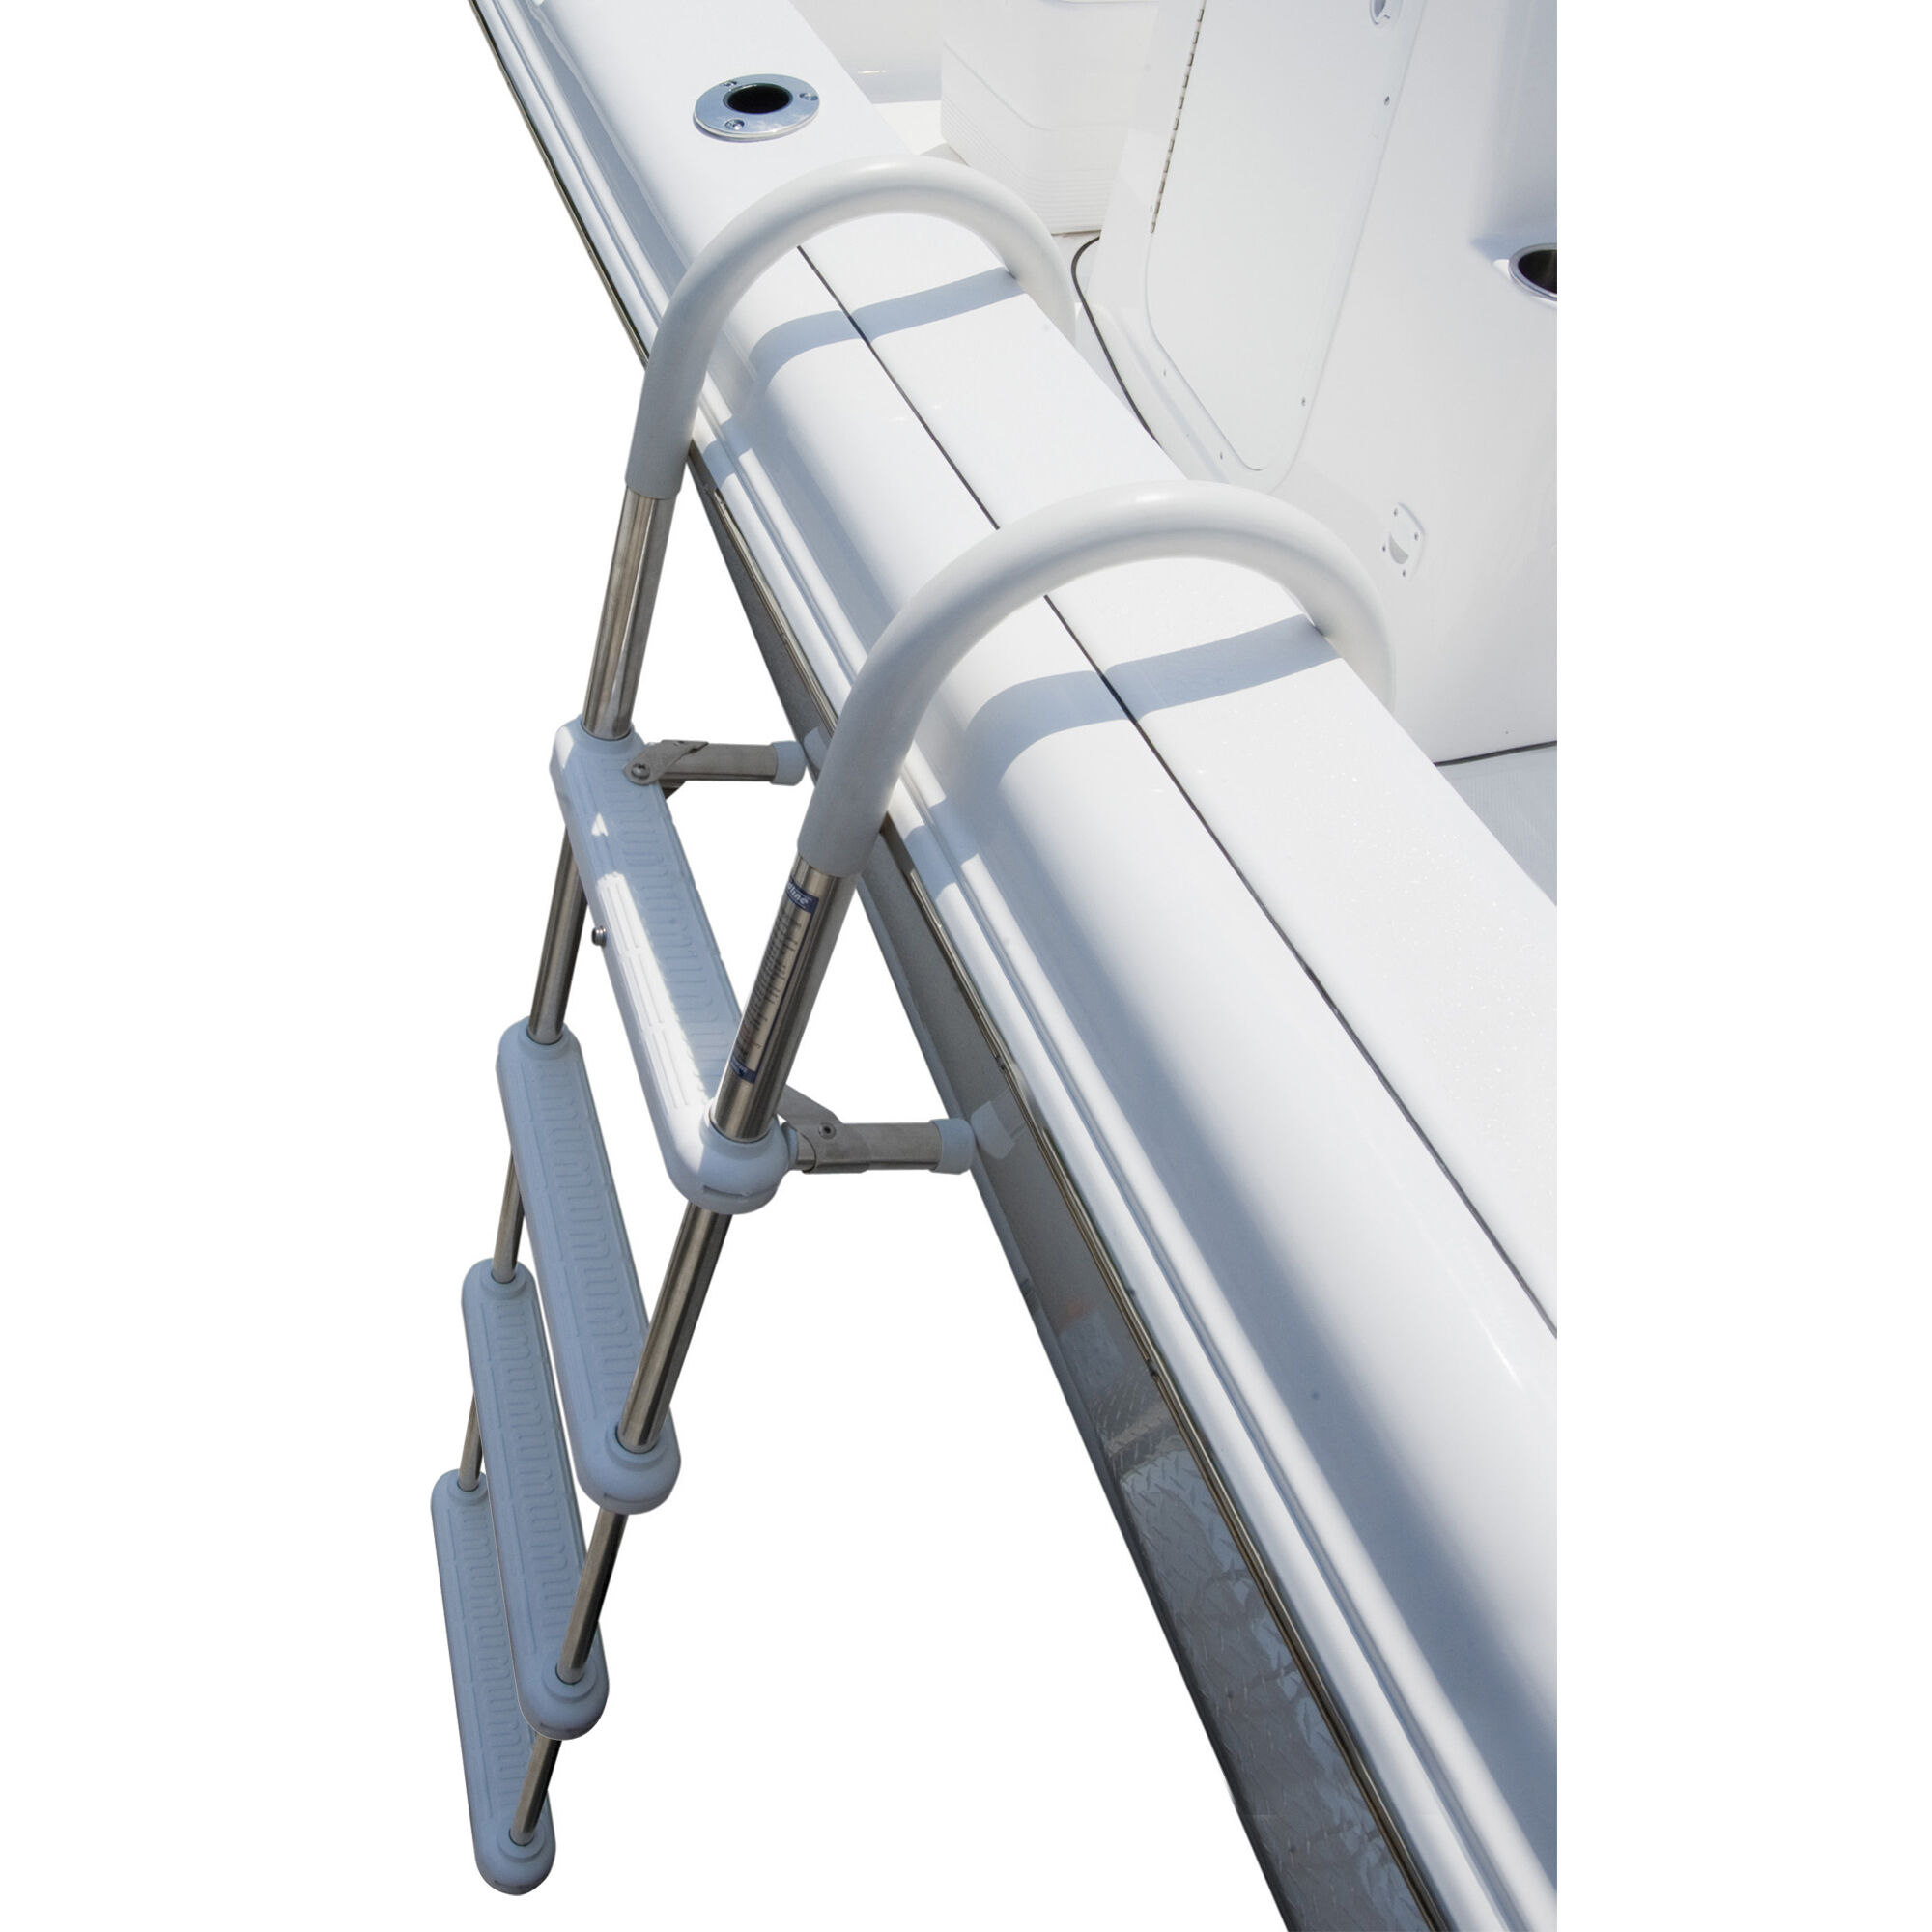 dockmate ladder